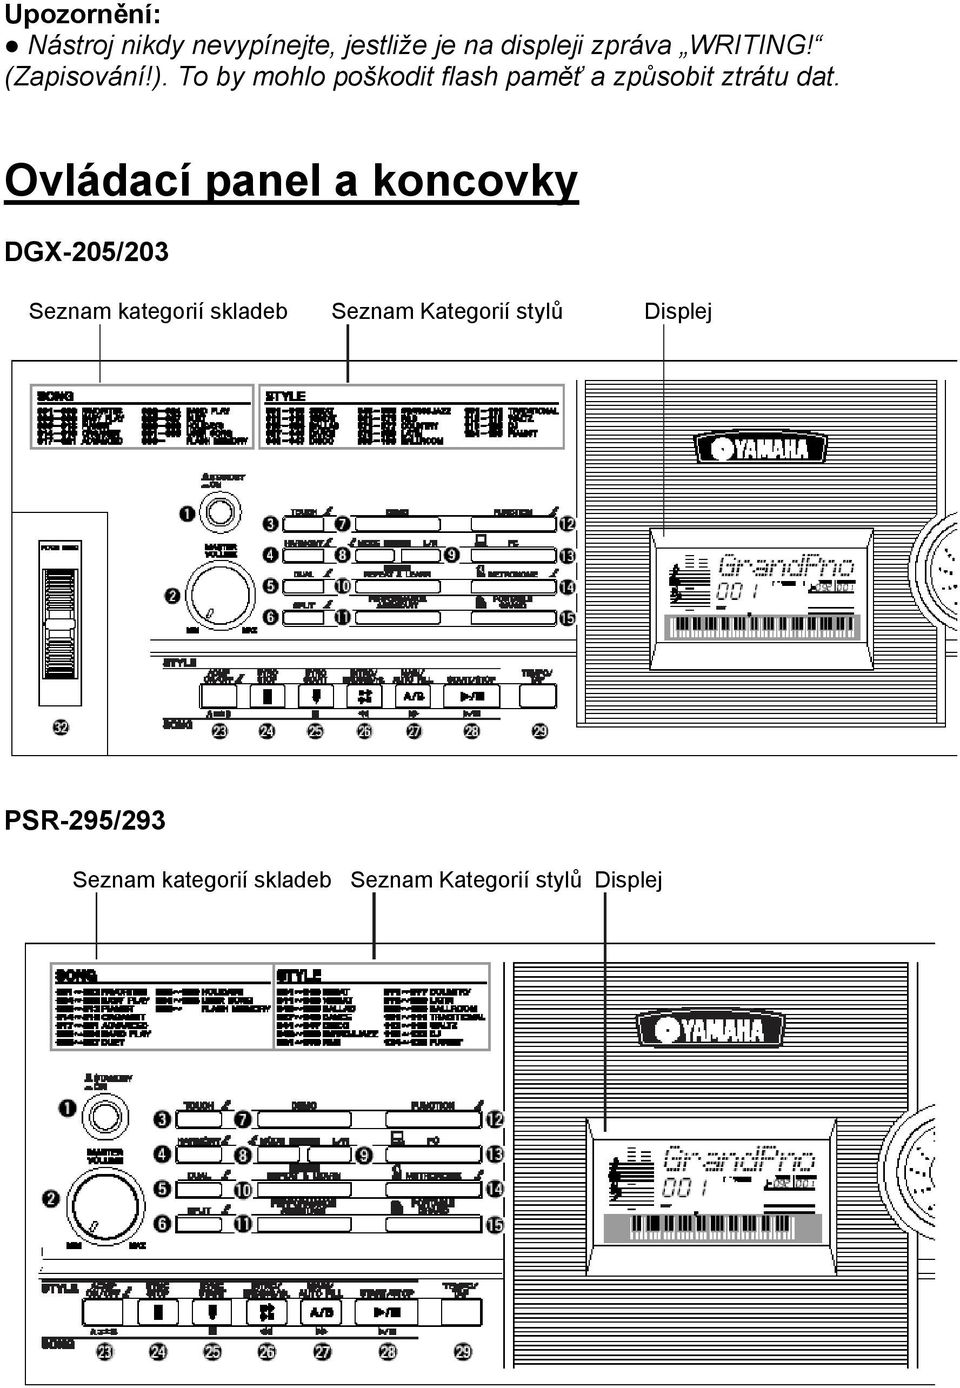 Ovládací panel a koncovky DGX-205/203 Seznam kategorií skladeb Seznam